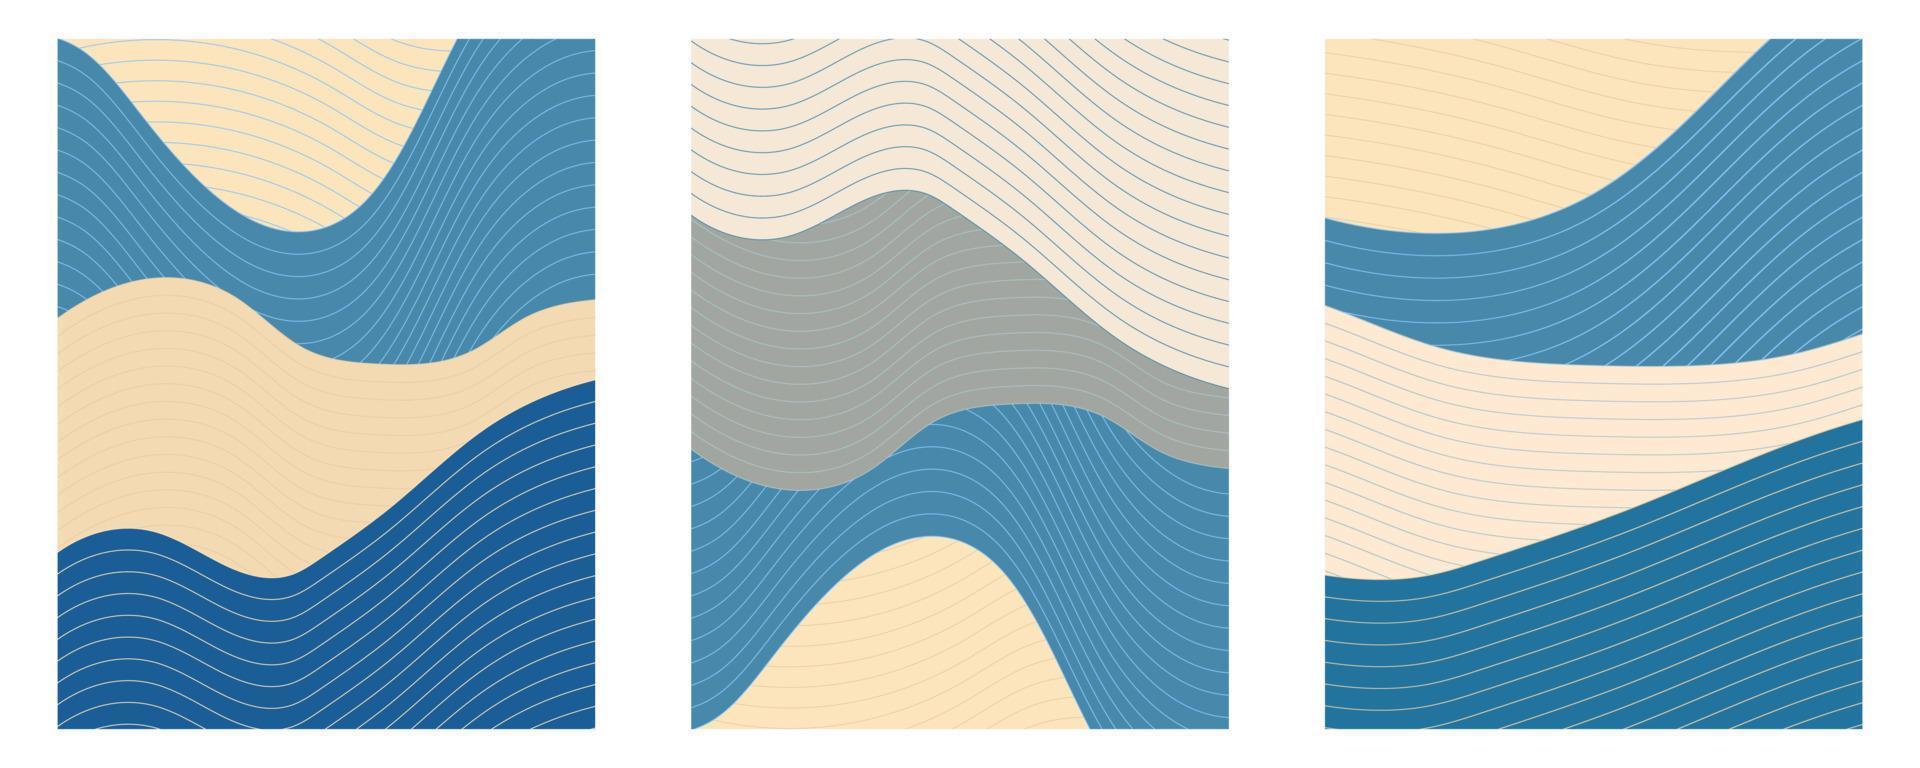 vague océanique japonaise fluide vintage en bleu et beige. ensemble de dessins vectoriels d'affiches avec des éléments de ligne. vecteur